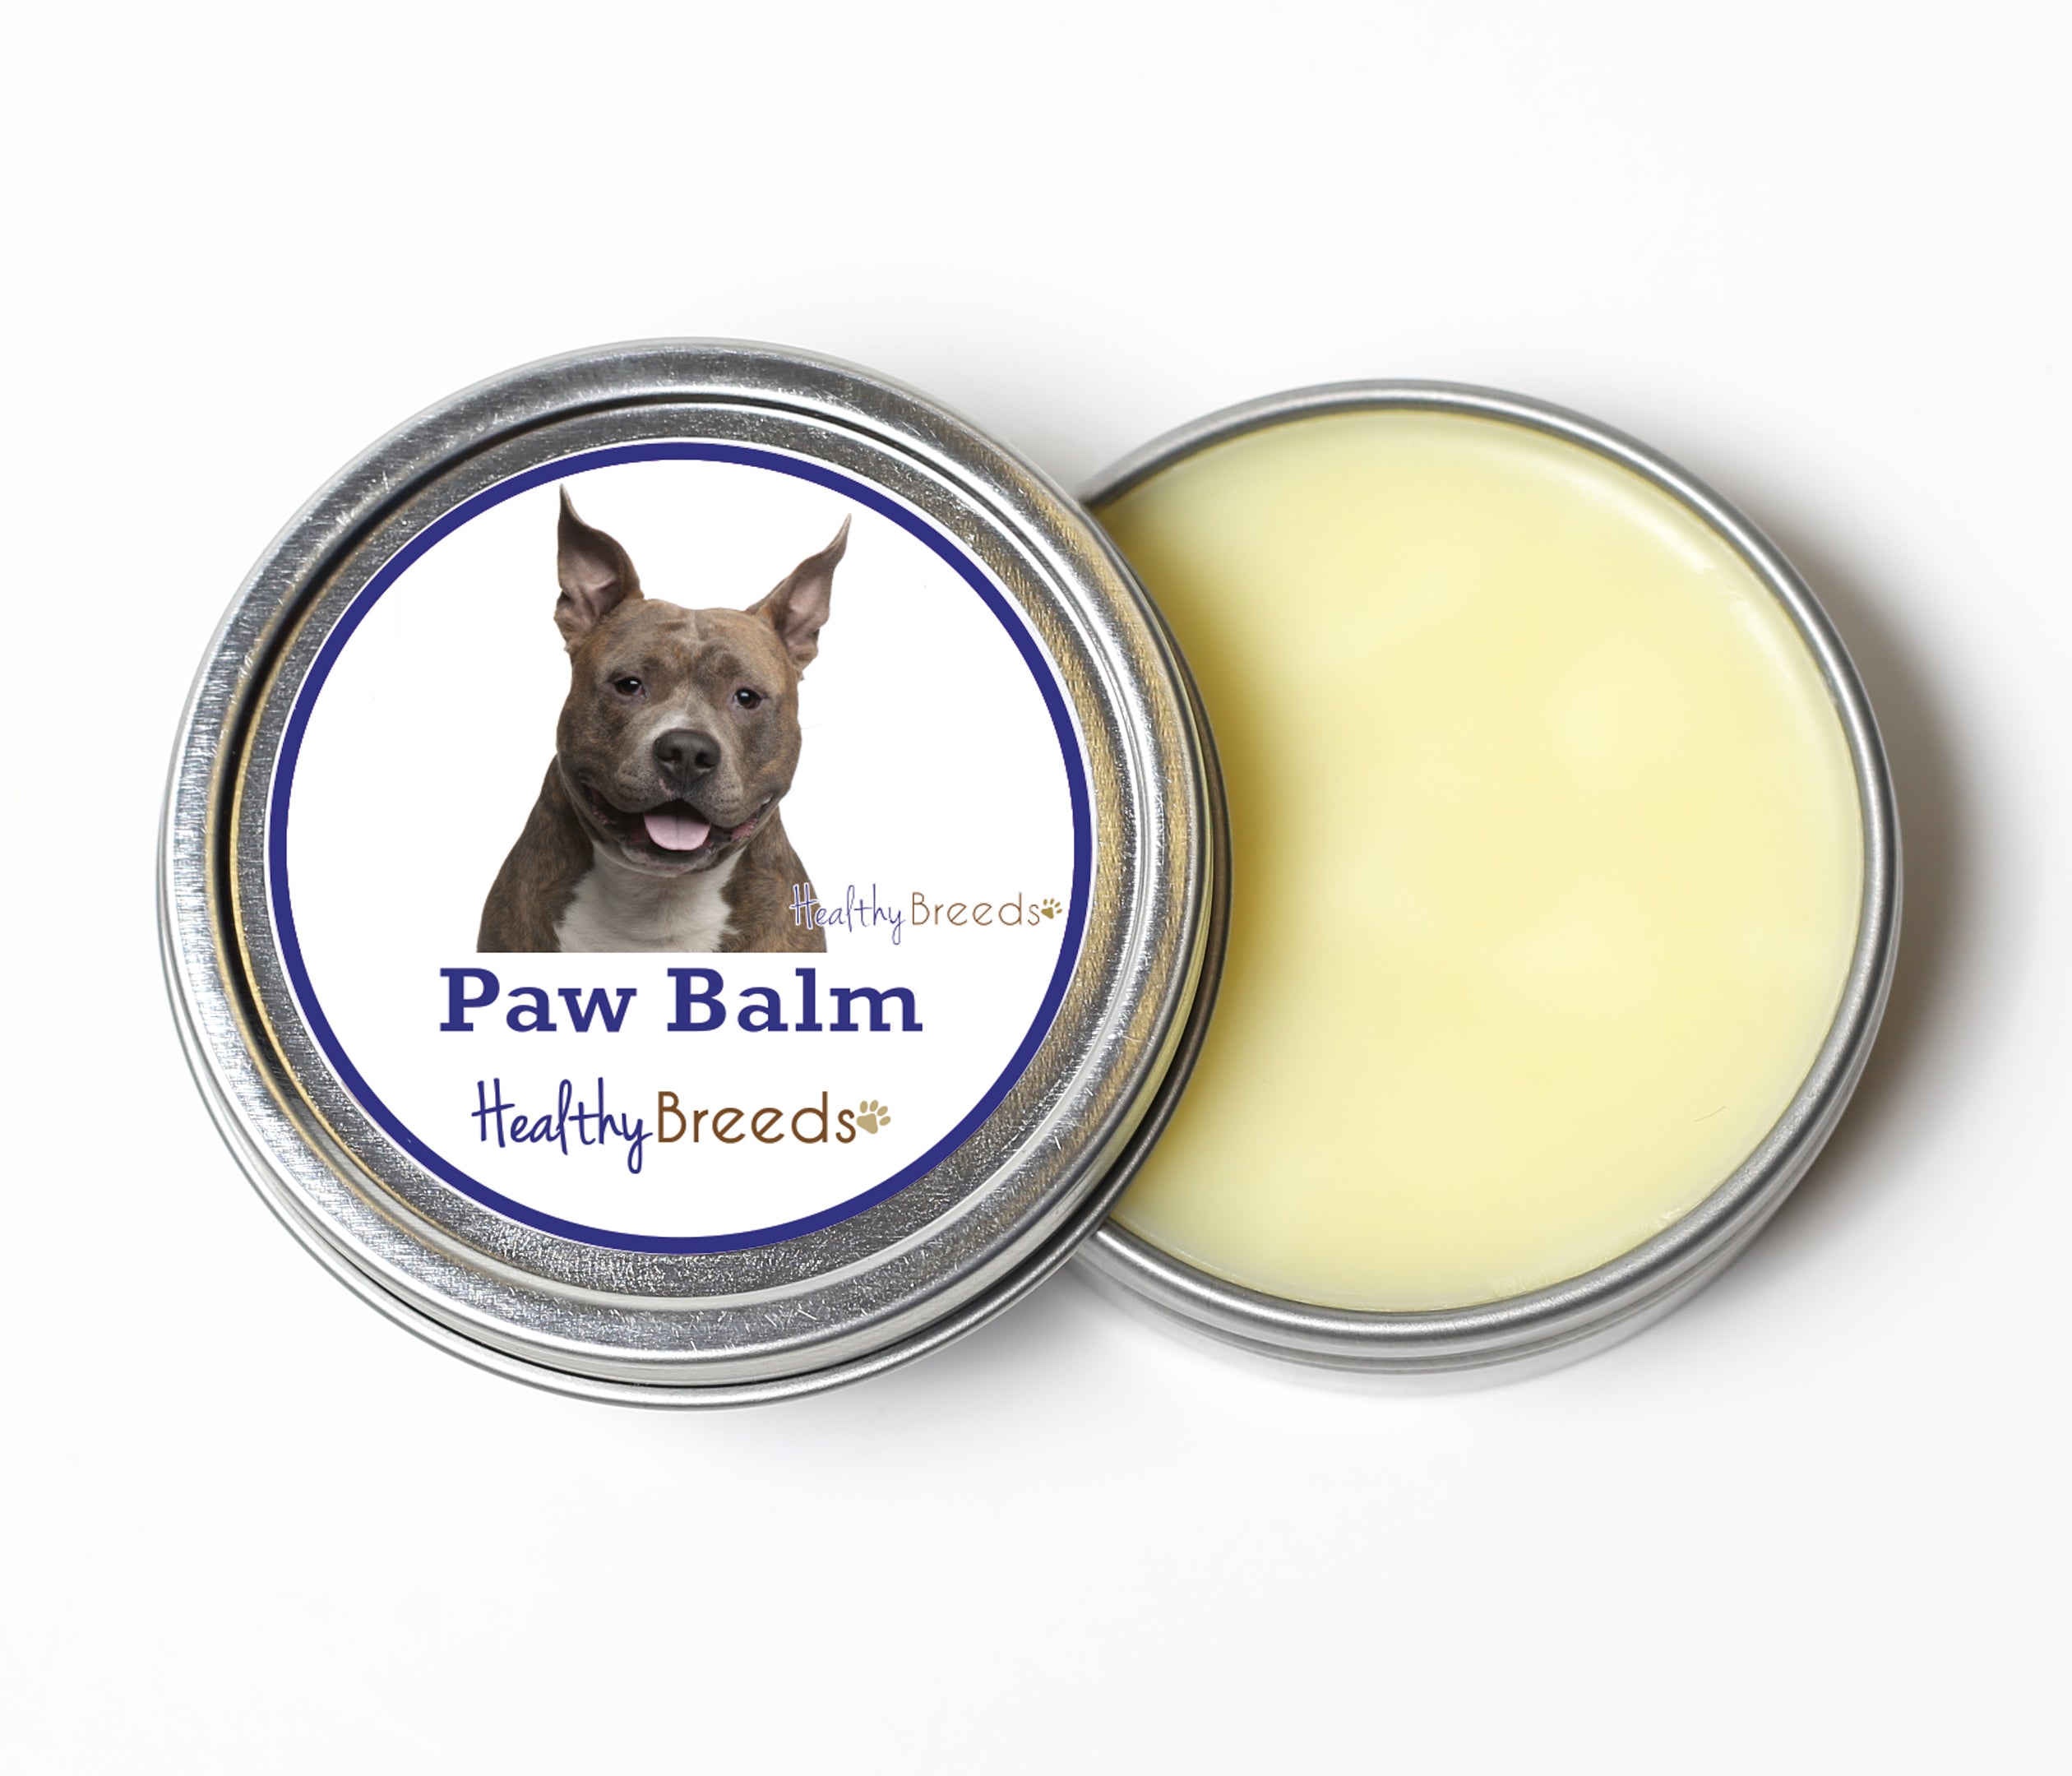 American Staffordshire Terrier Dog Paw Balm 2 oz